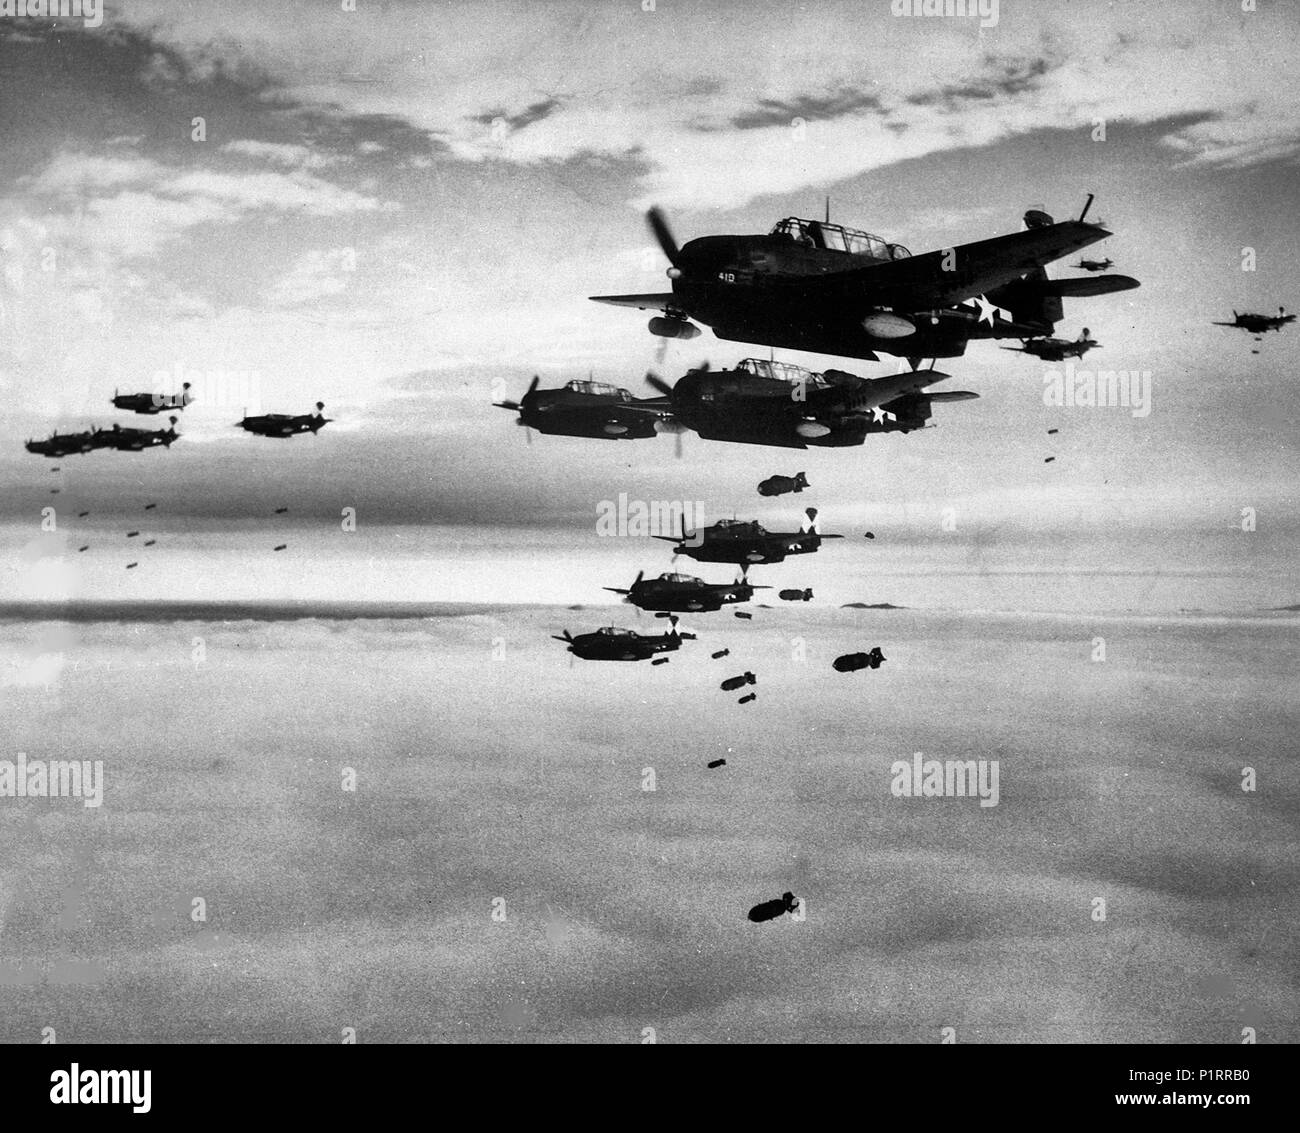 Stati Uniti Navy Grumman TBM-3 vendicatori e Curtiss SB2C Helldivers assegnati al vettore Air Group 83 (CVG-83) a bordo della portaerei USS Essex (CV-9) cadono le bombe su Hakodate, Giappone, nel luglio 1945. Foto Stock